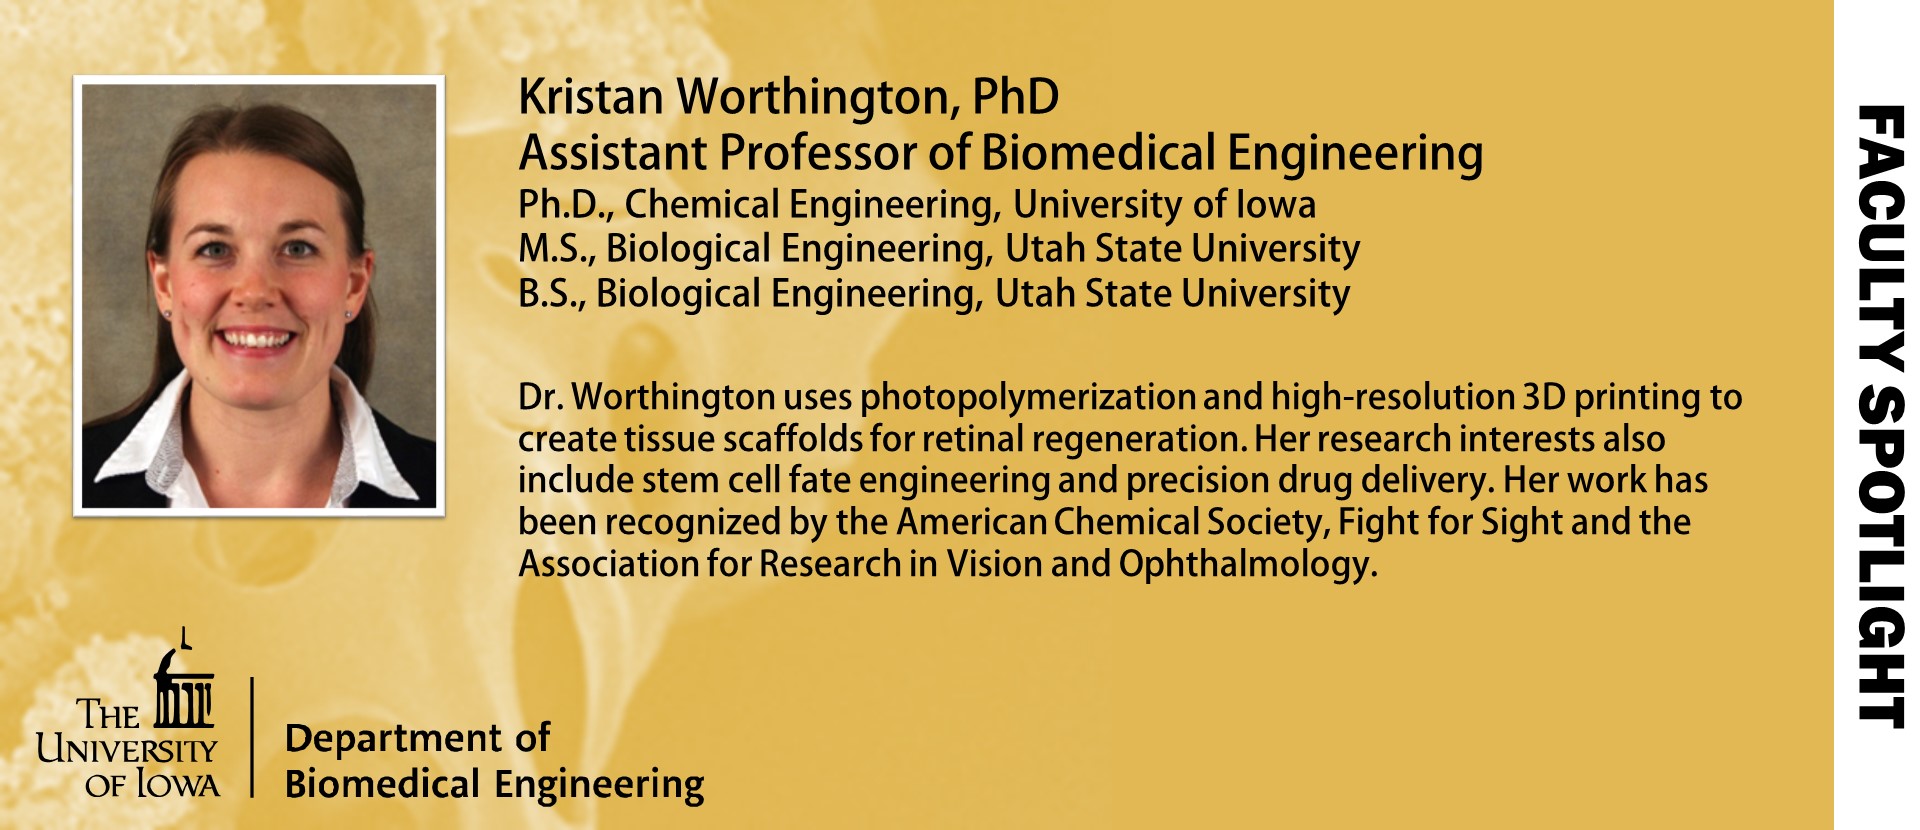 Dr. Worthington